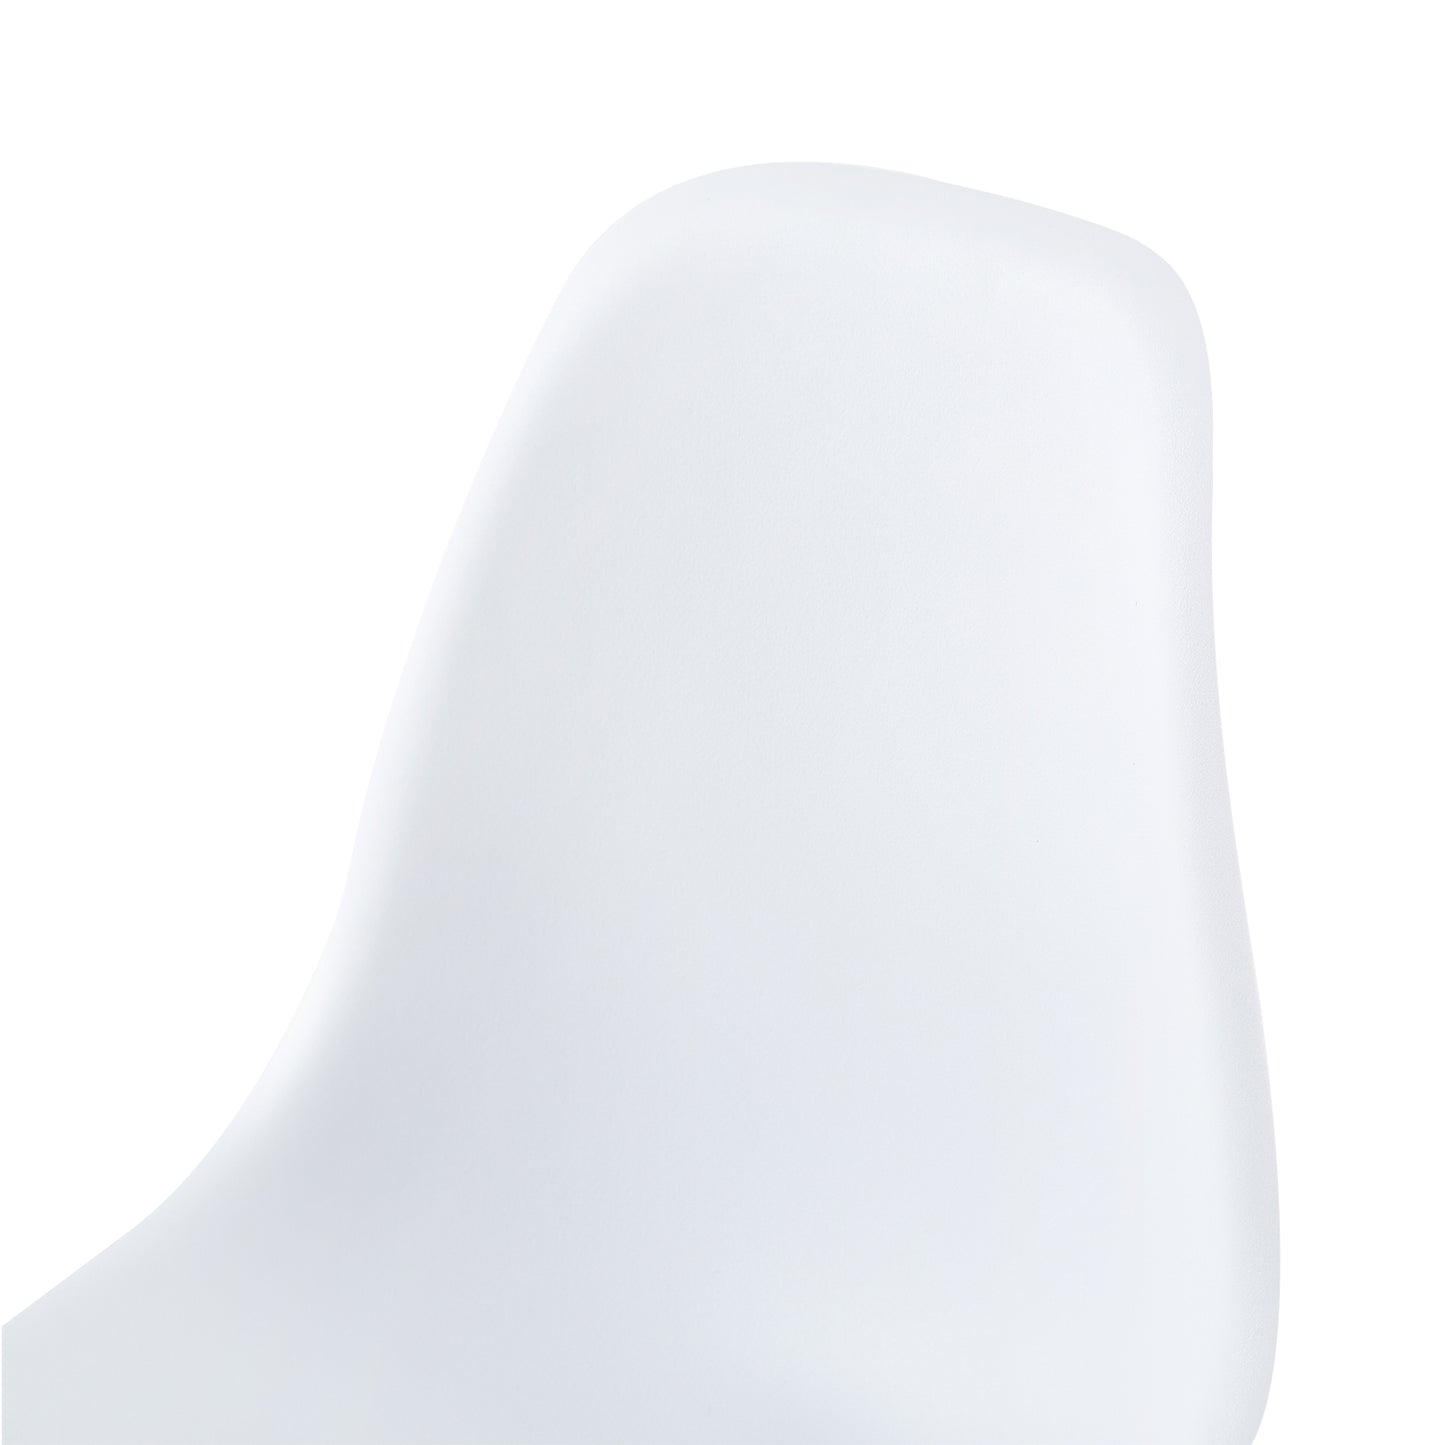 Lot de 2 chaises Scandinave design La mode Salle à Manger Chaises de Blanc - Cuisine,Salon,Bureau